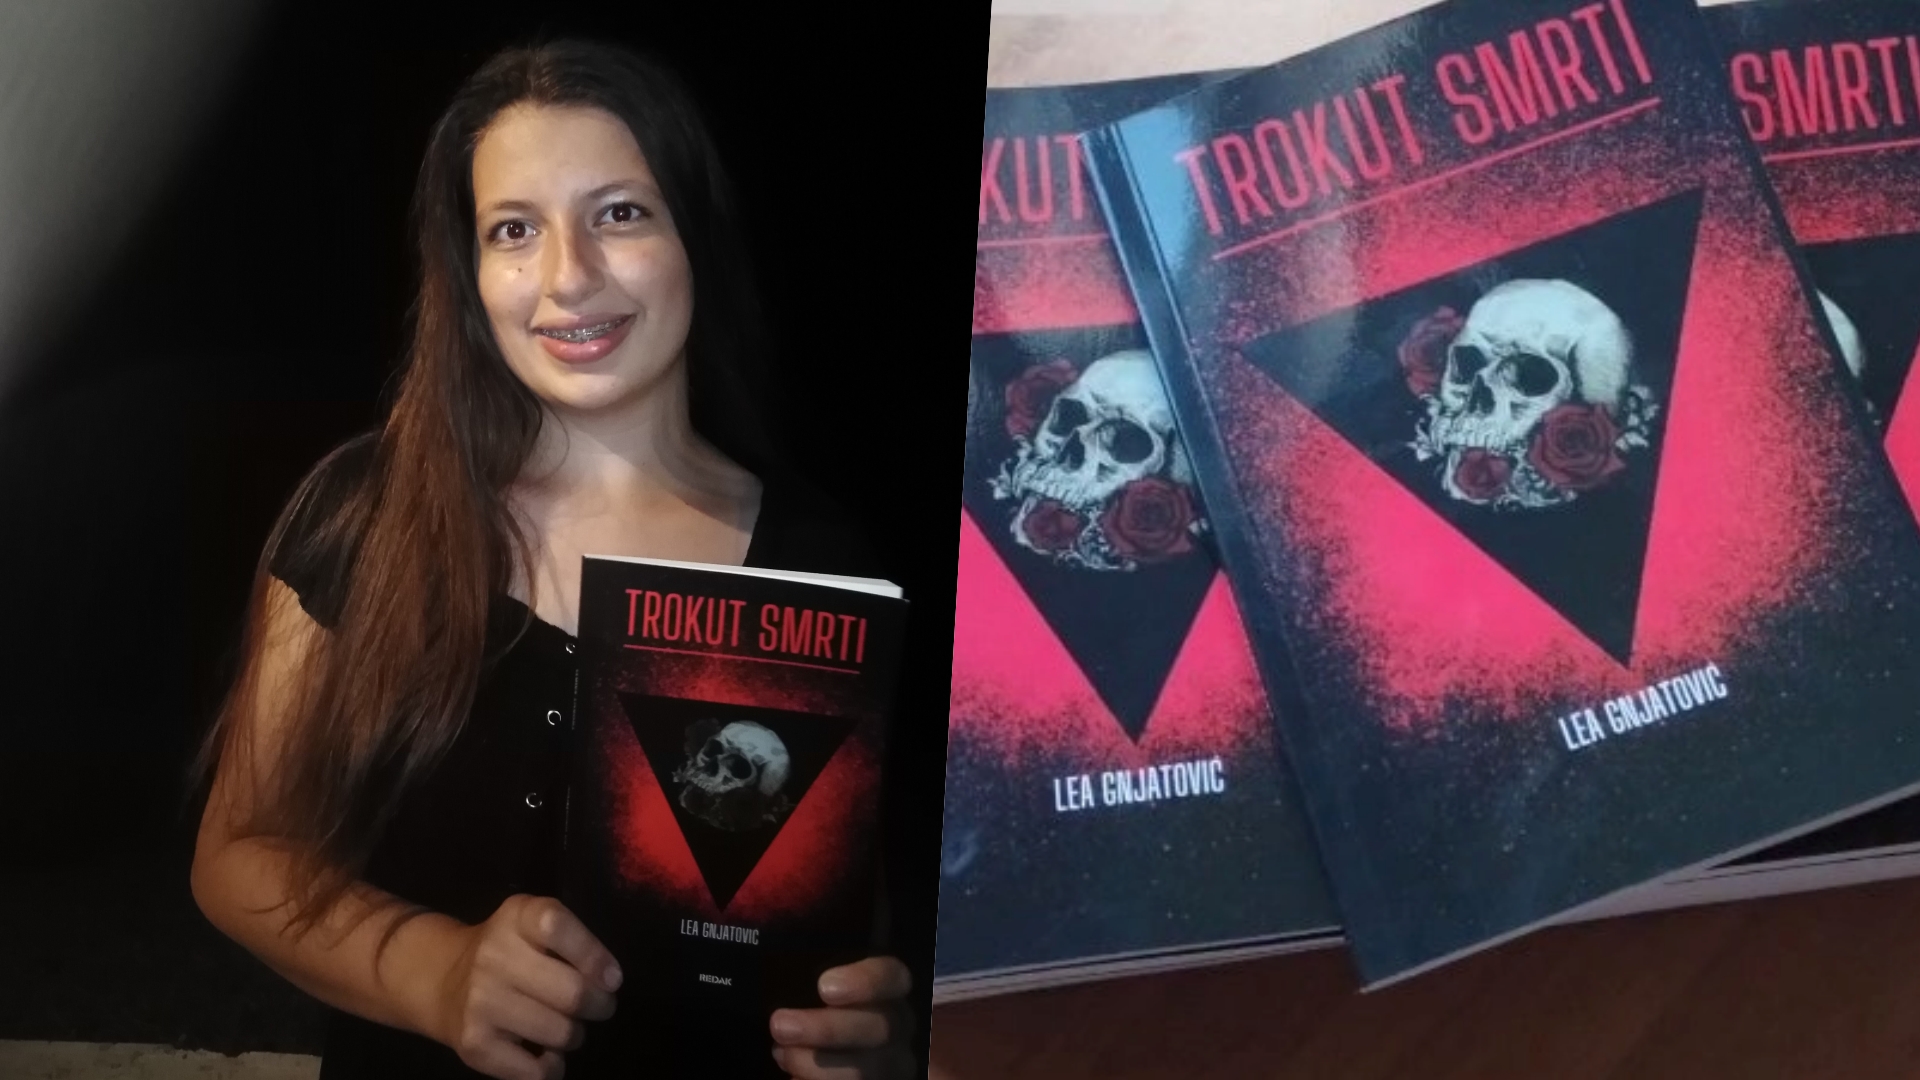 Učenica Gimnazije Sisak Lea Gnjatović sa svojom prvom objavljenom knjigom Trokut smrti u rukama